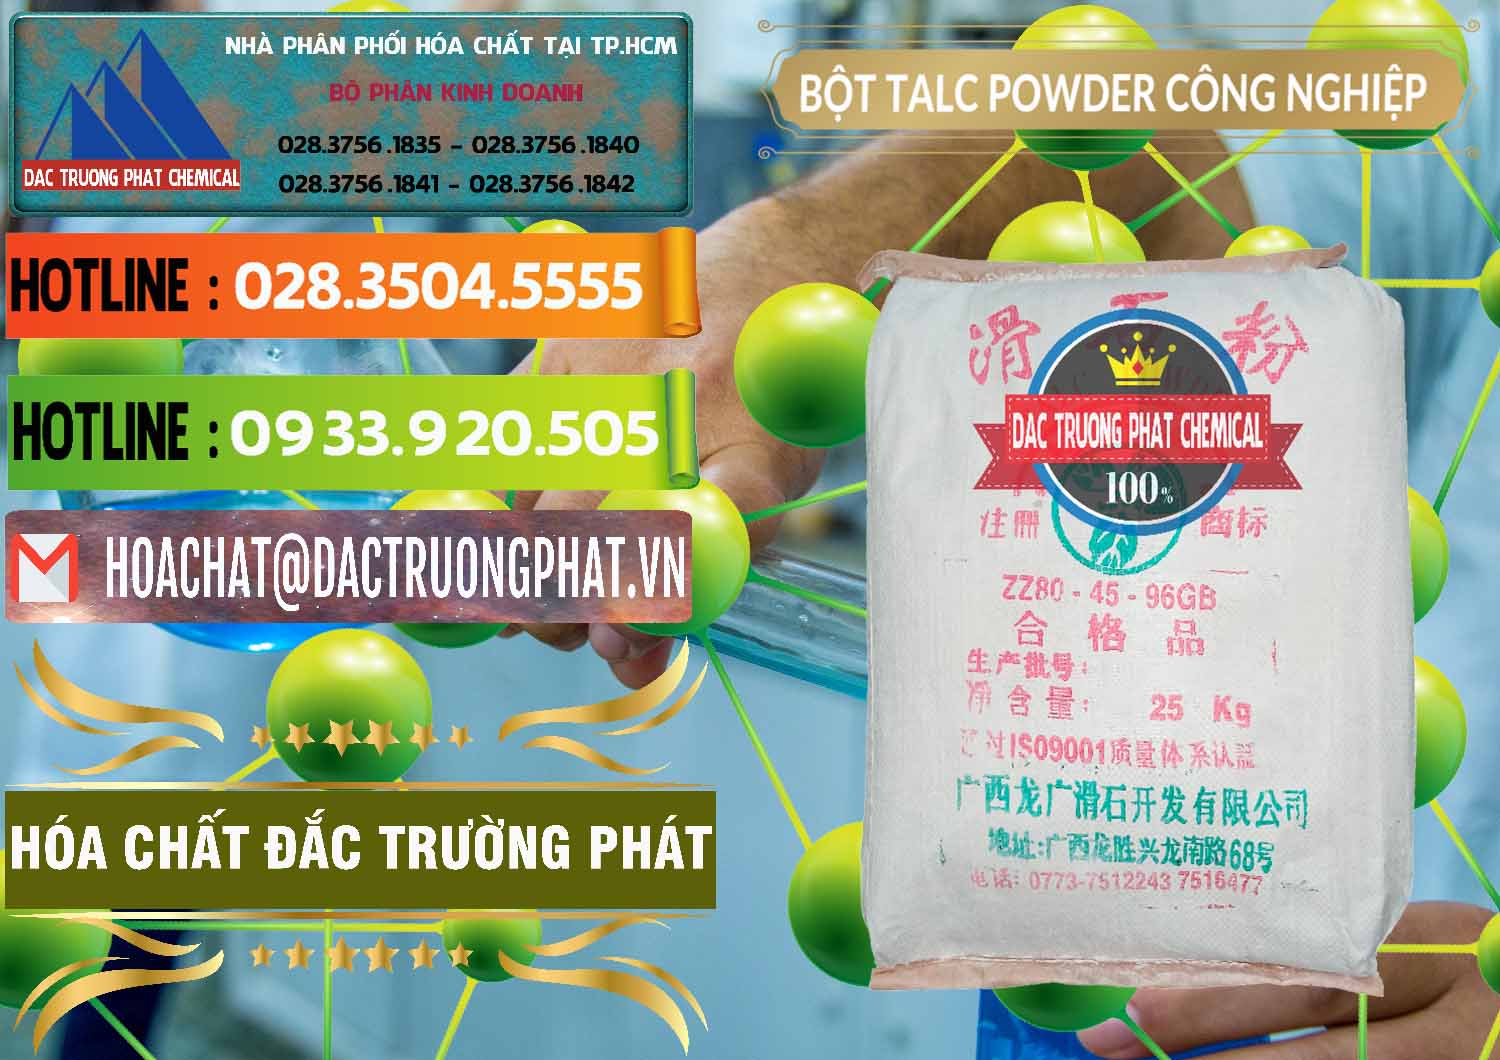 Chuyên kinh doanh ( bán ) Bột Talc Powder Công Nghiệp Trung Quốc China - 0037 - Nơi phân phối ( bán ) hóa chất tại TP.HCM - cungcaphoachat.com.vn